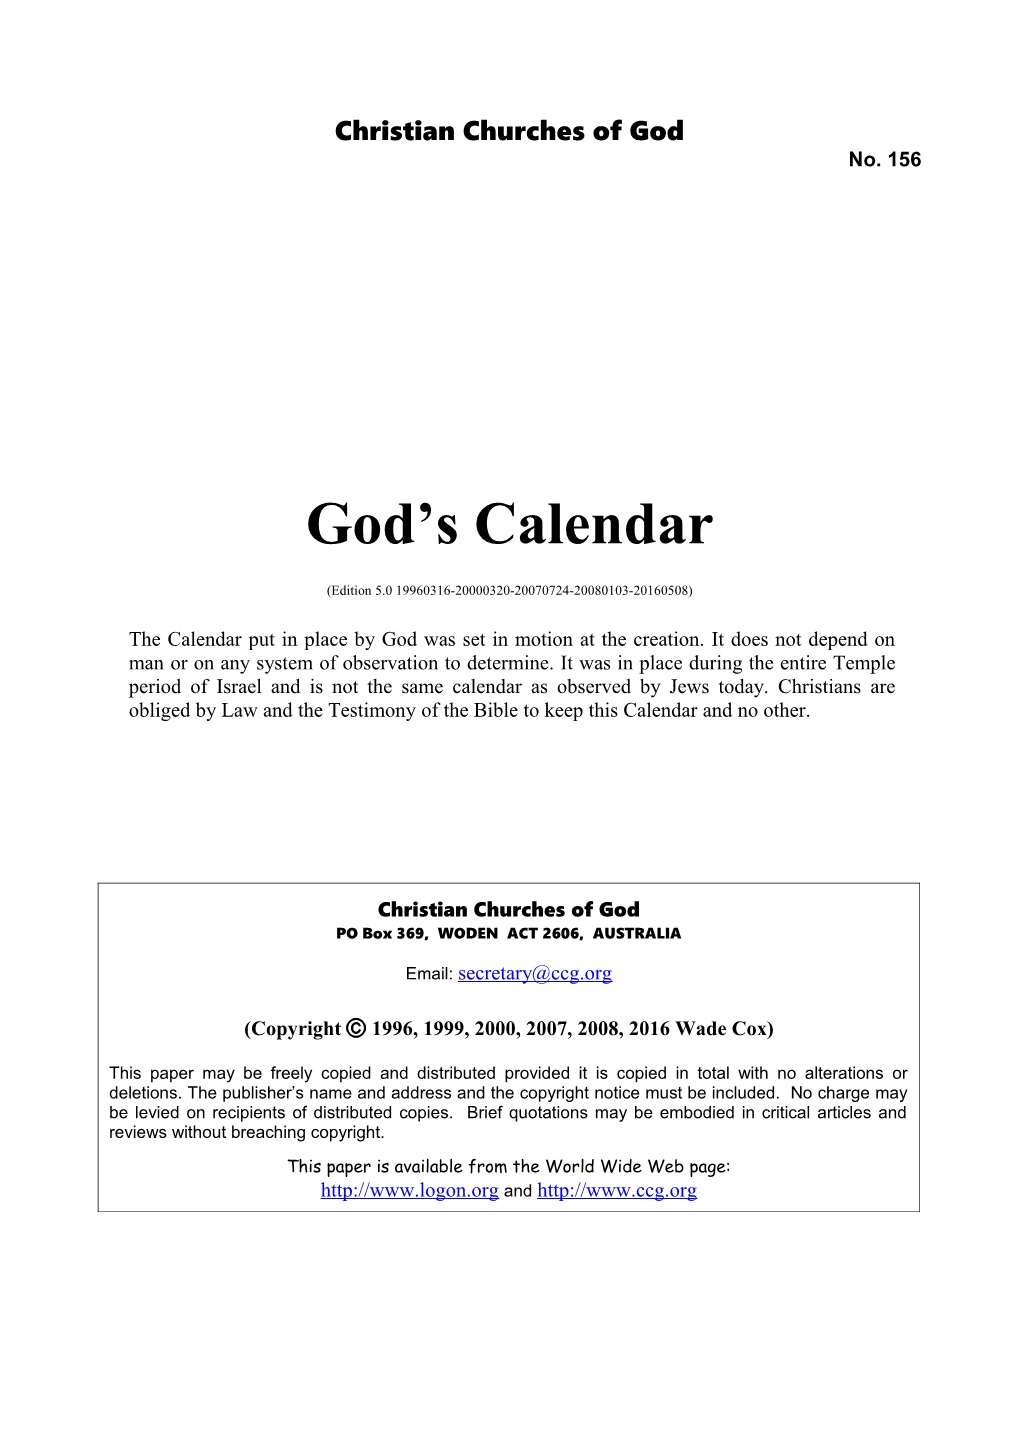 God's Calendar (No. 156)